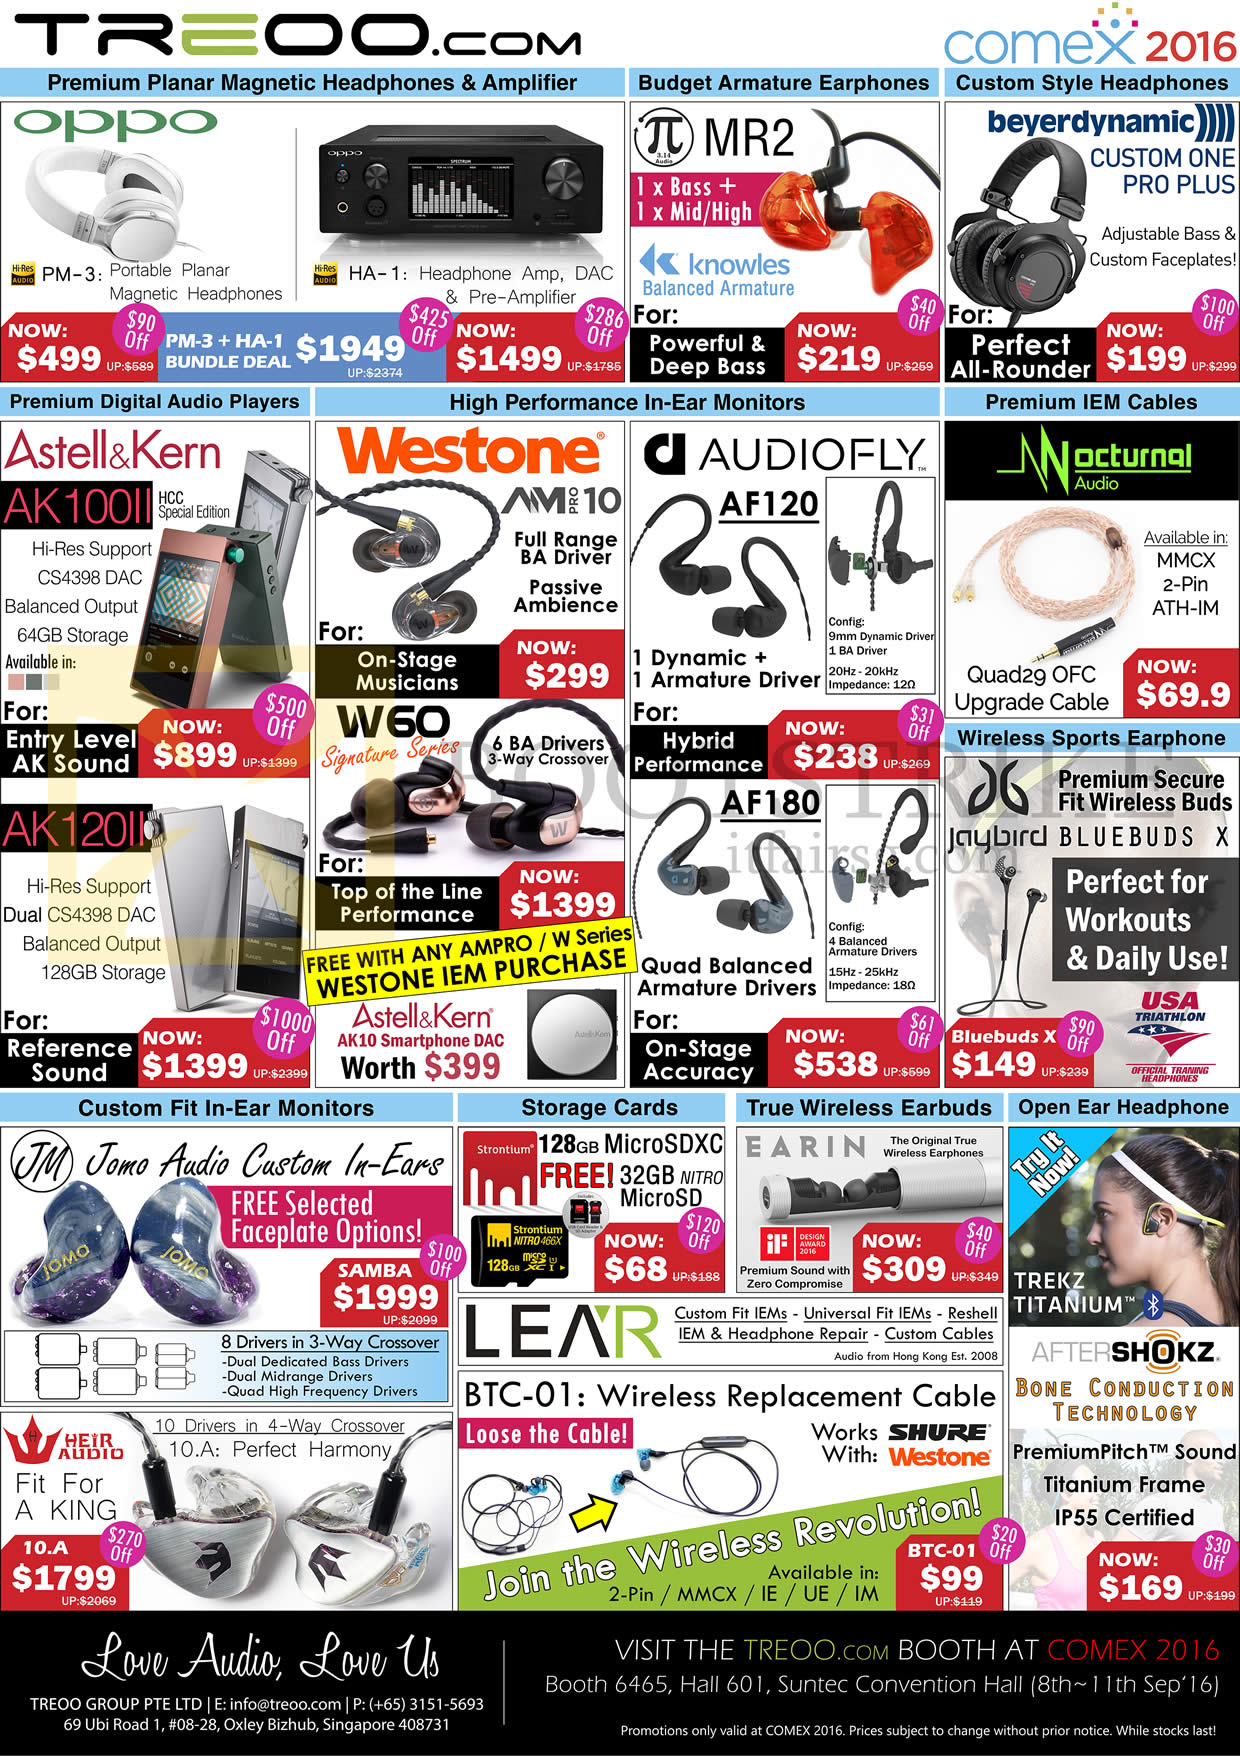 COMEX 2016 price list image brochure of Treoo Headphones, Almplifier, Earphones, Cables, MicroSD Card, Oppo, MR2, Beyerdynamic, Astell N Kern, Westone, Audiofly, W60